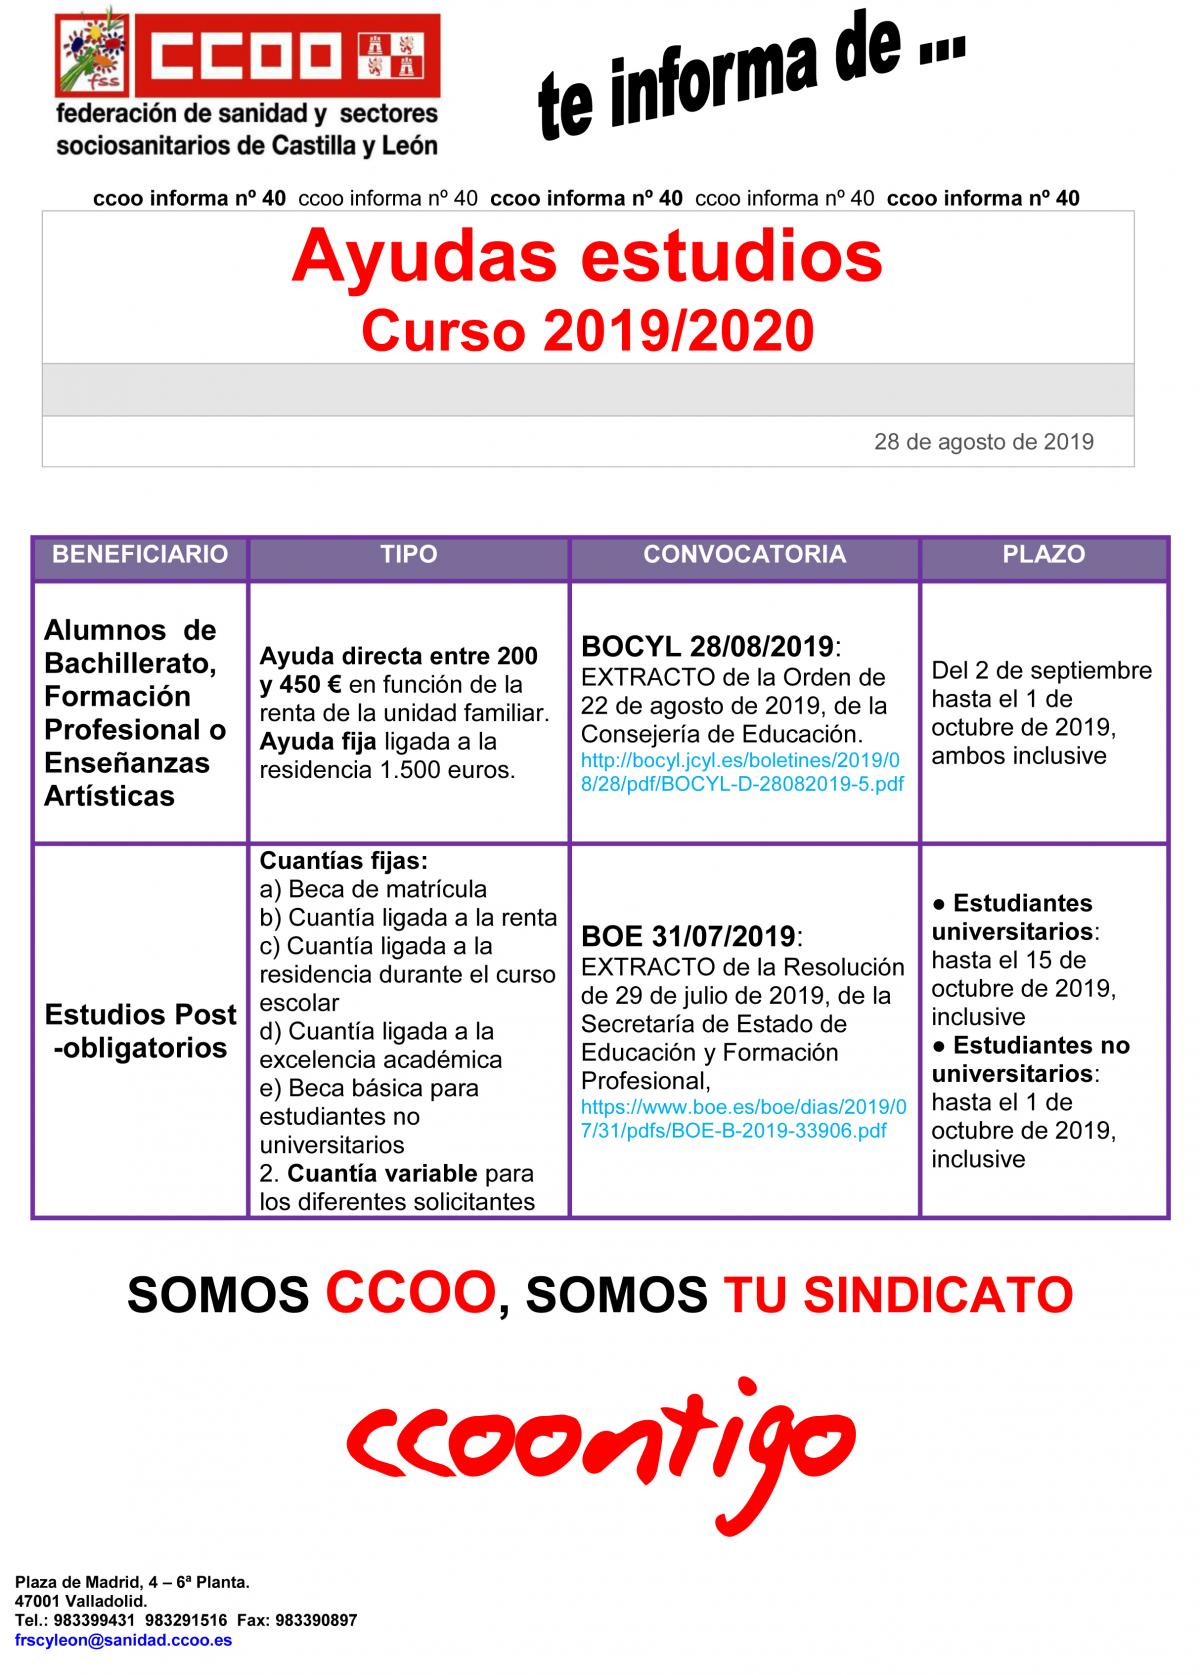 Federación de Sanidad Sectores Sociosanitarios de CCOO Castilla y León